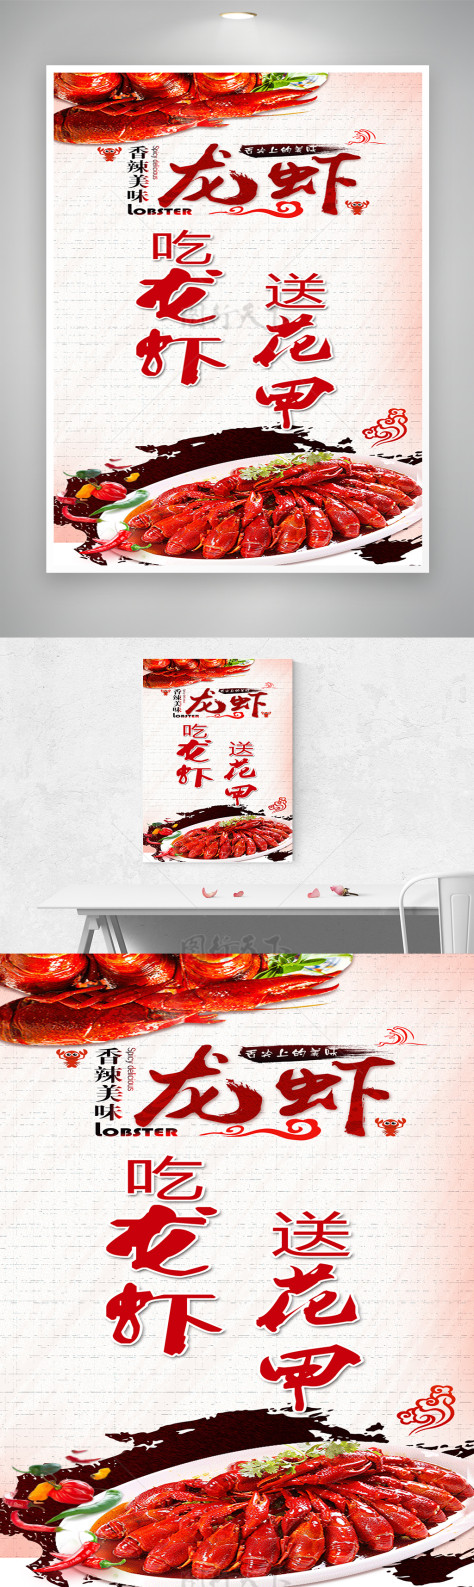 创新宣传图龙虾活动送花甲海报